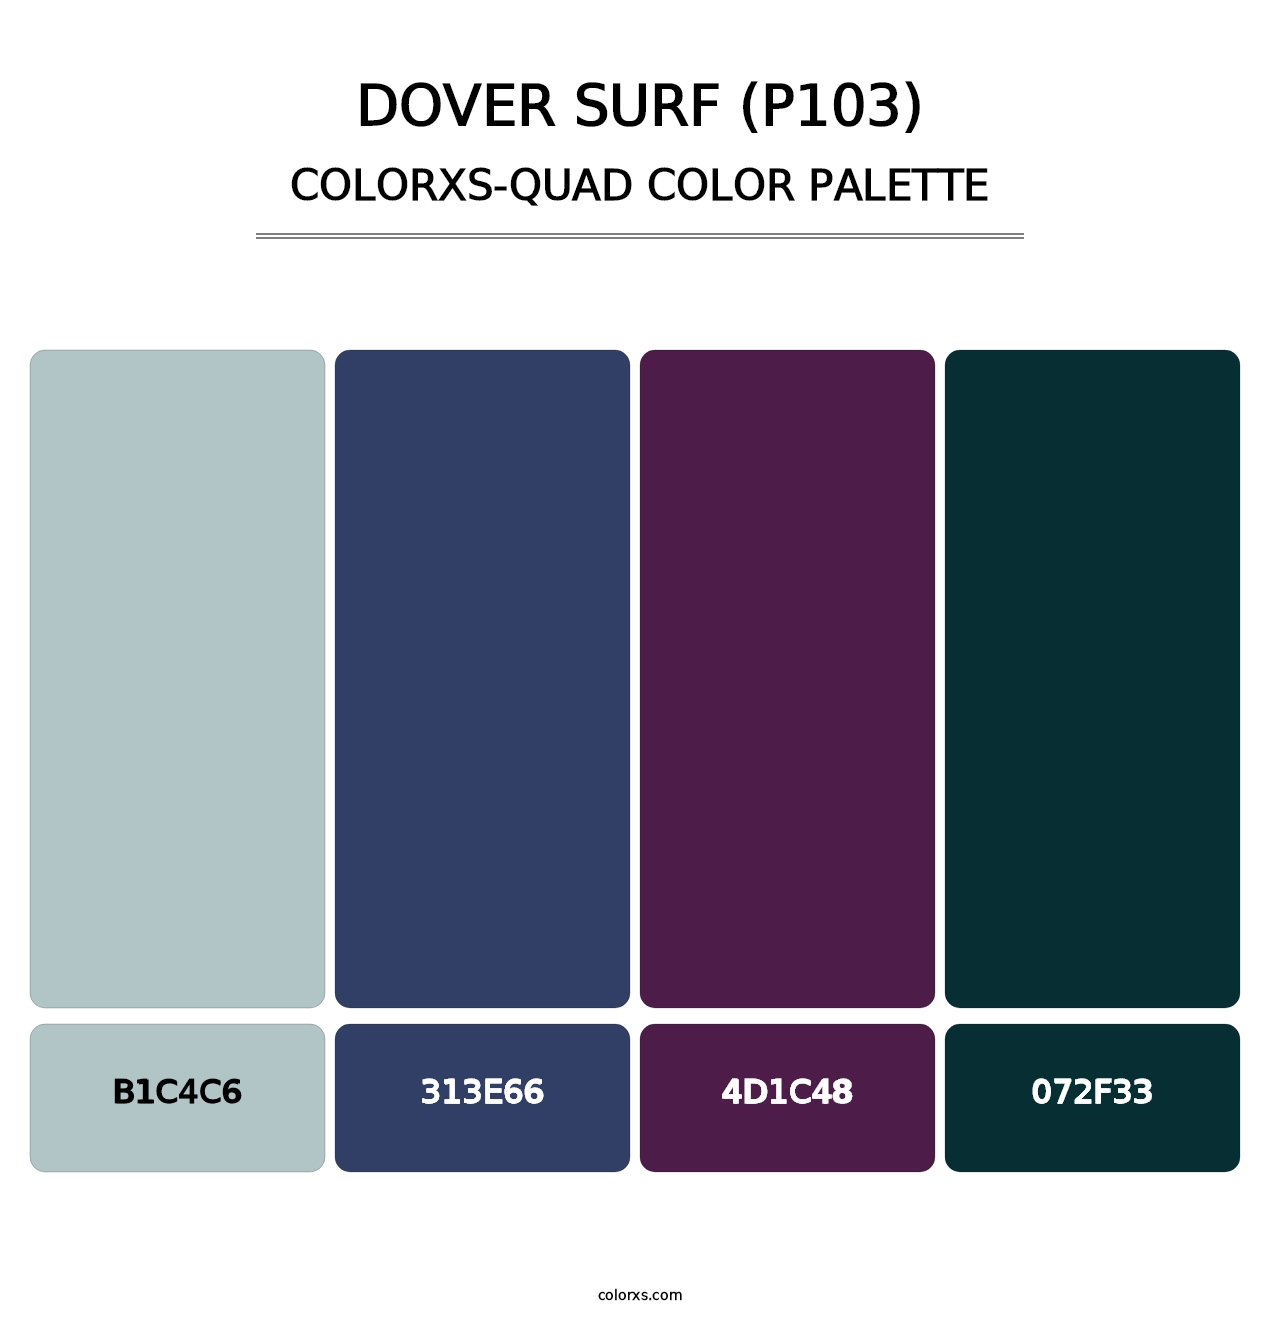 Dover Surf (P103) - Colorxs Quad Palette